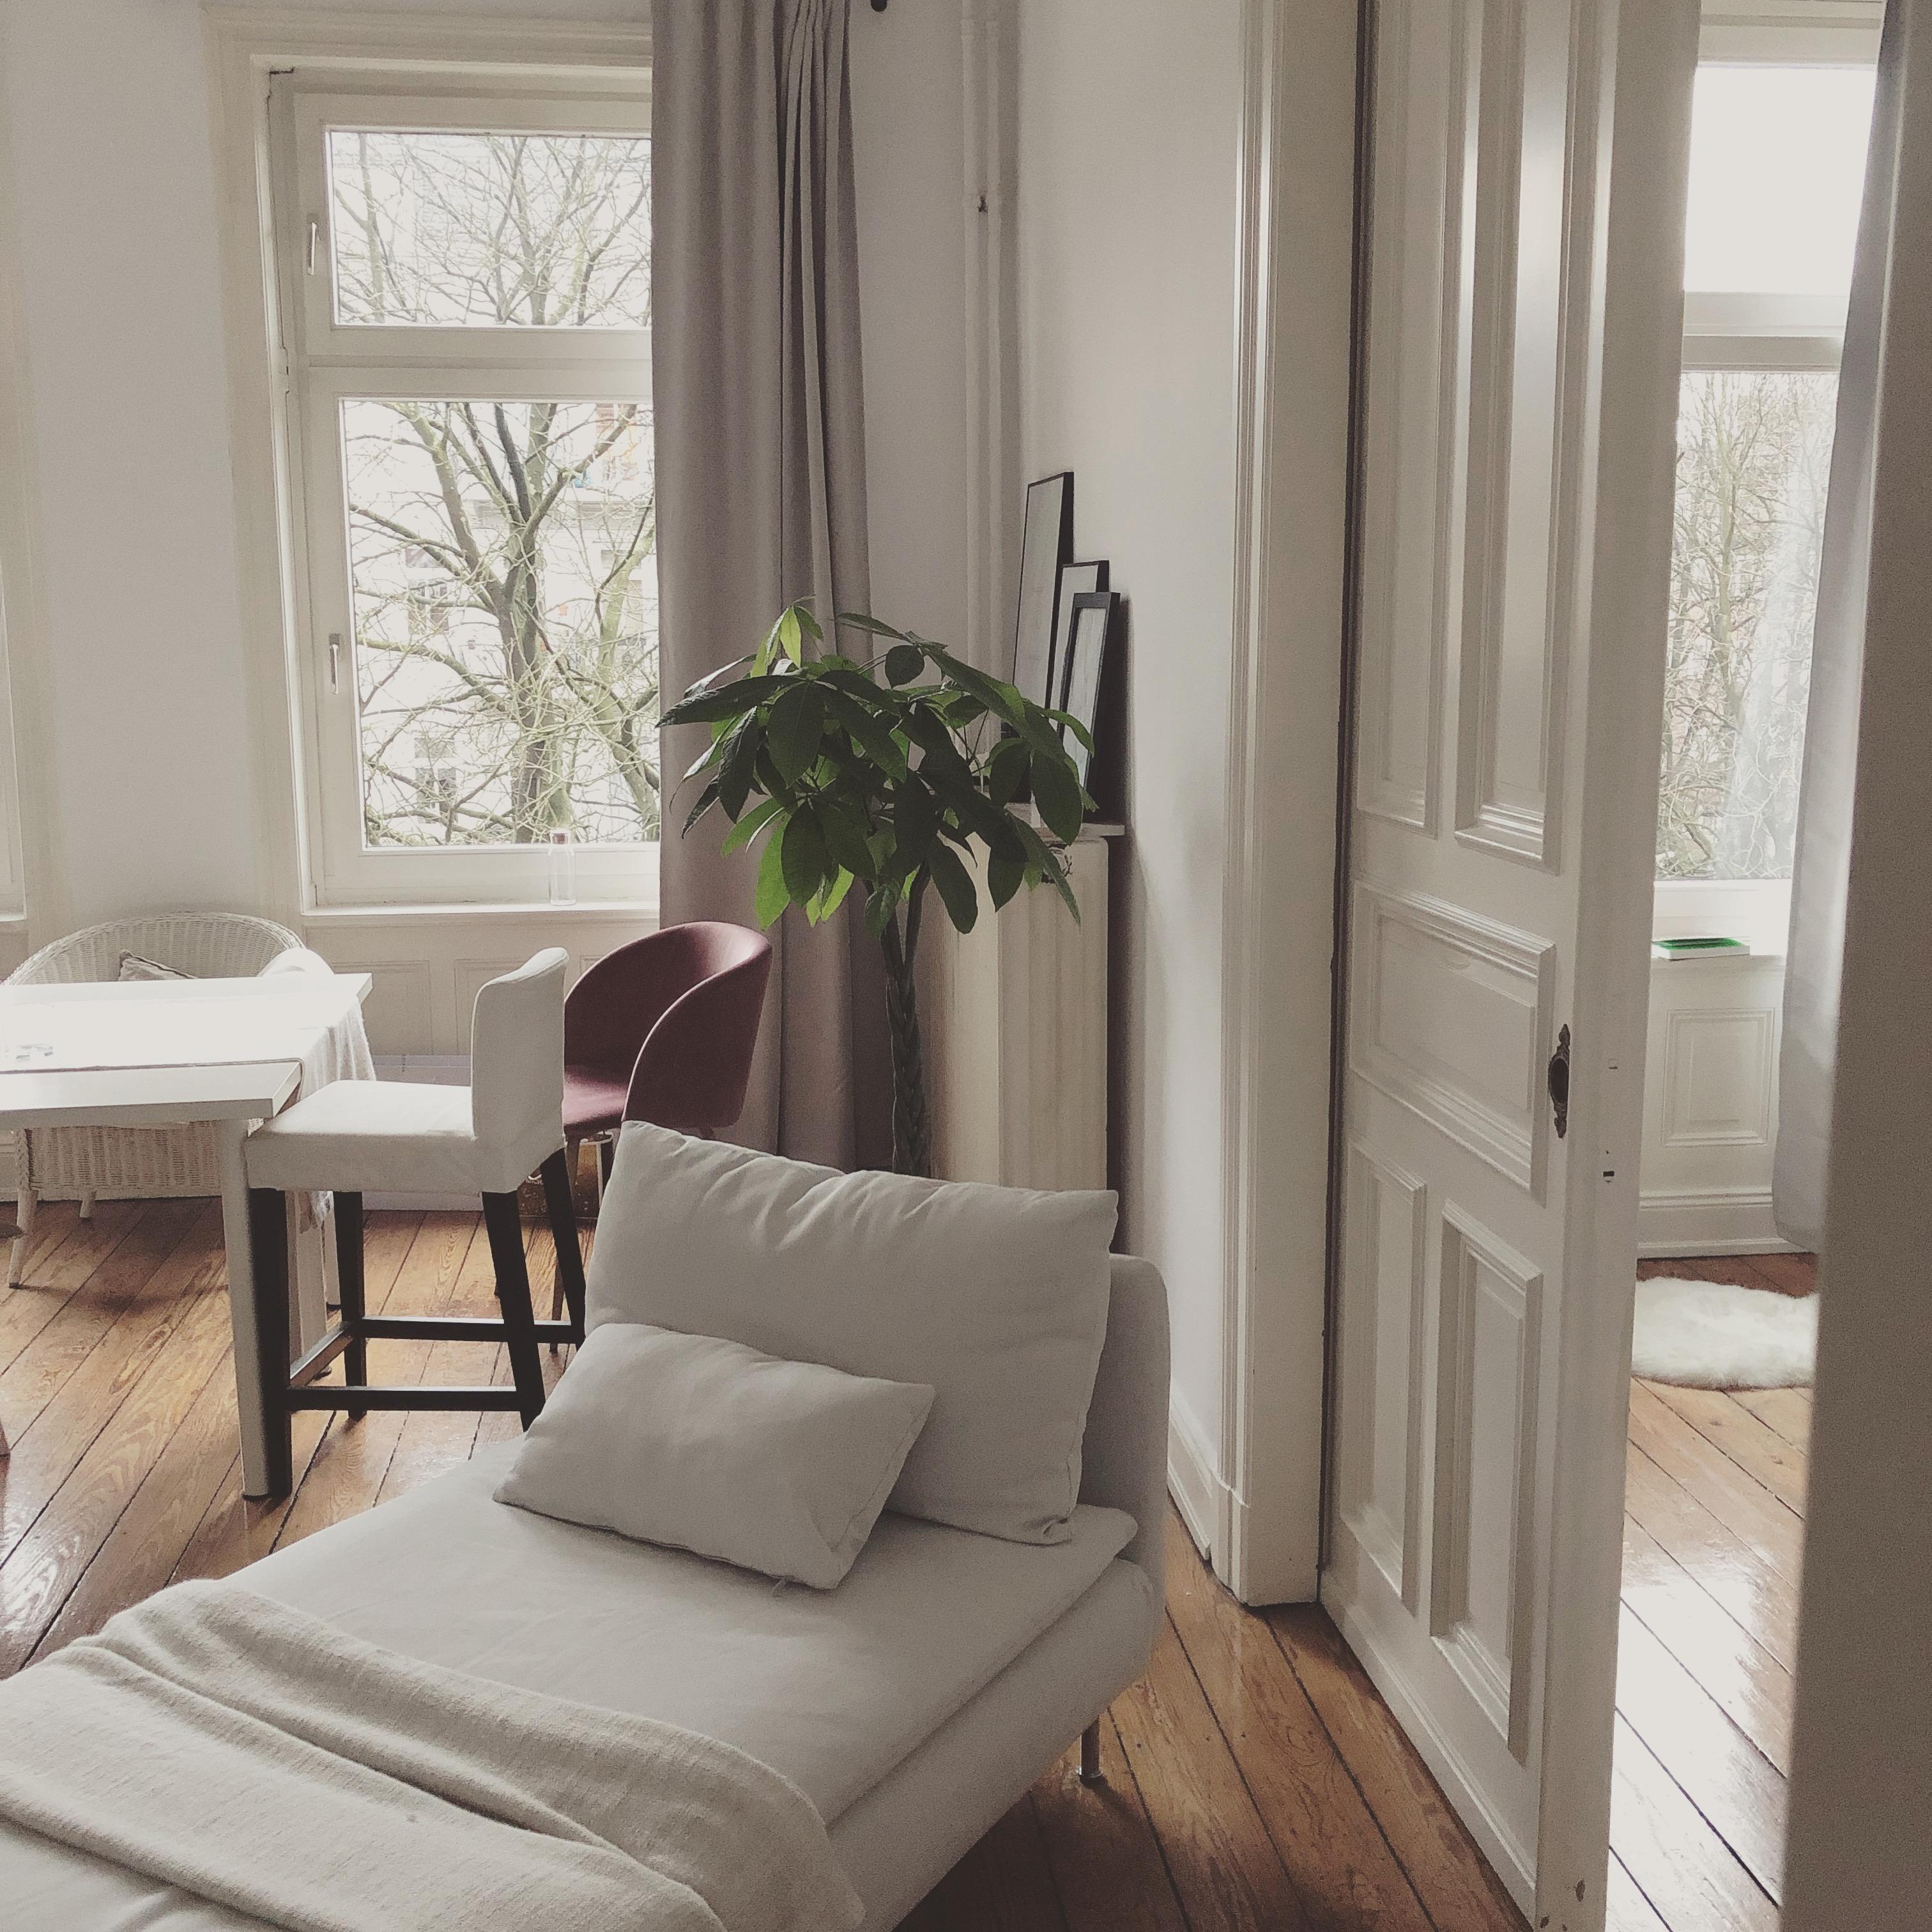 Einen schönen #freitag euch! Der letzte Wochentag startet mit einem Blick ins #wohnzimmer #home #living #couch #altbau